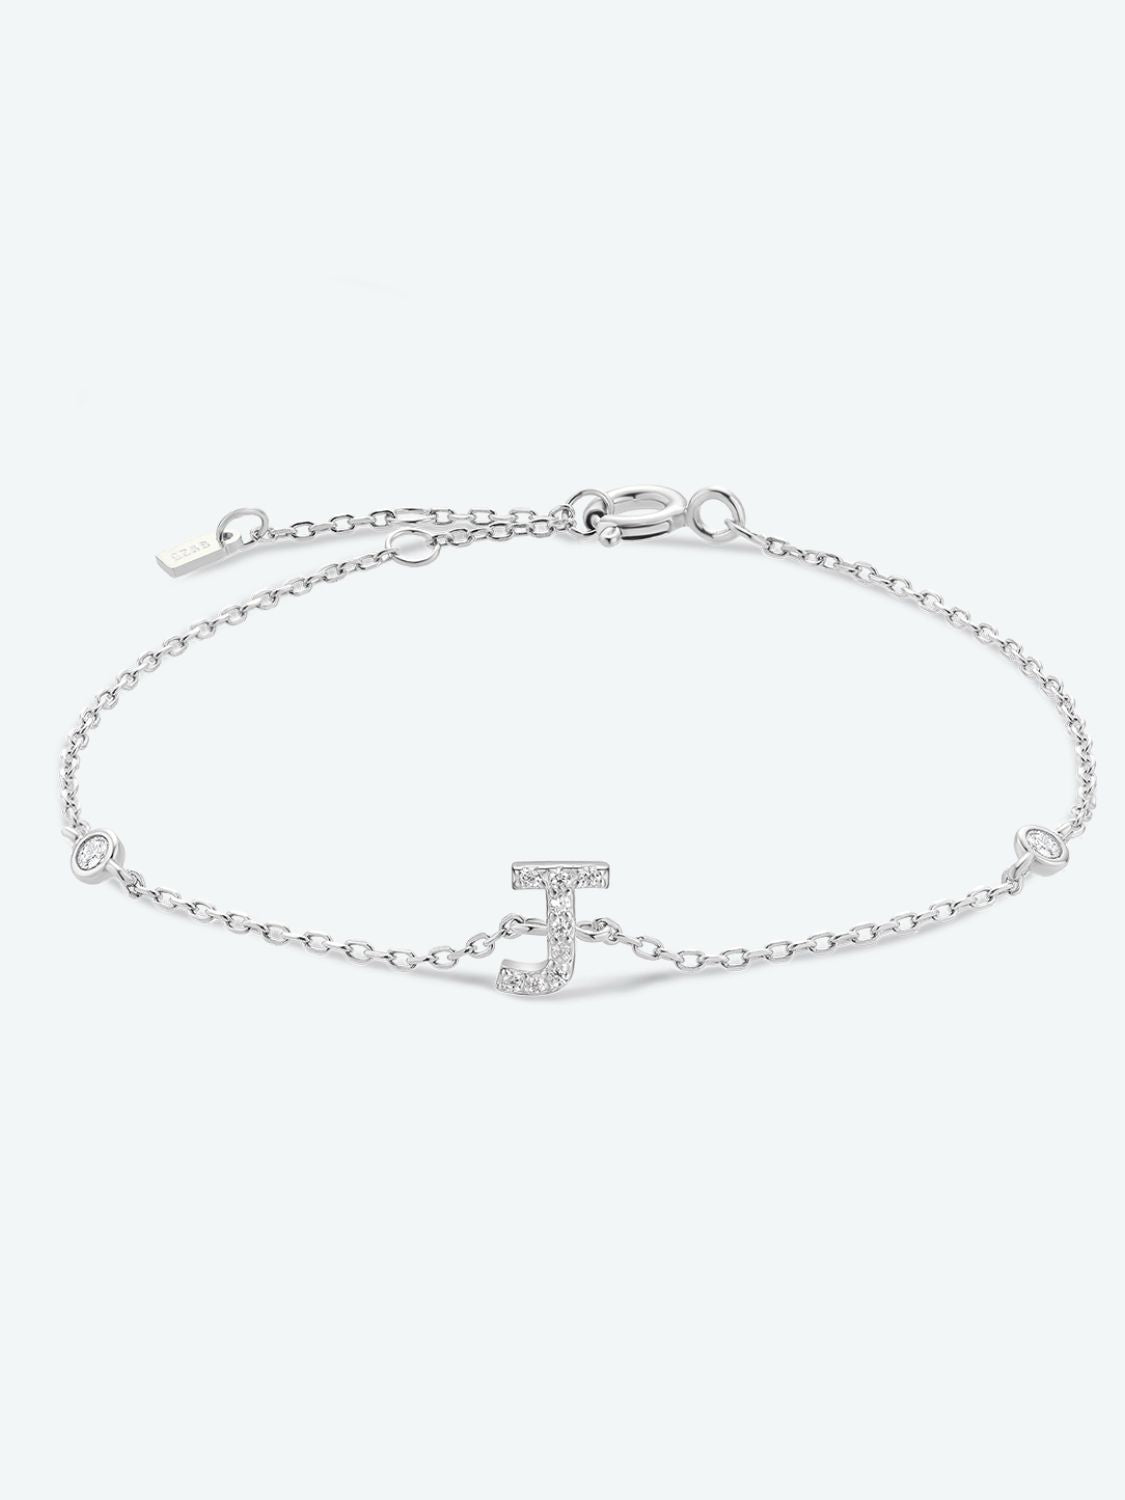 Zircon 925 Sterling Silver Bracelet - J-Silver / One Size - Women’s Jewelry - Bracelets - 22 - 2024